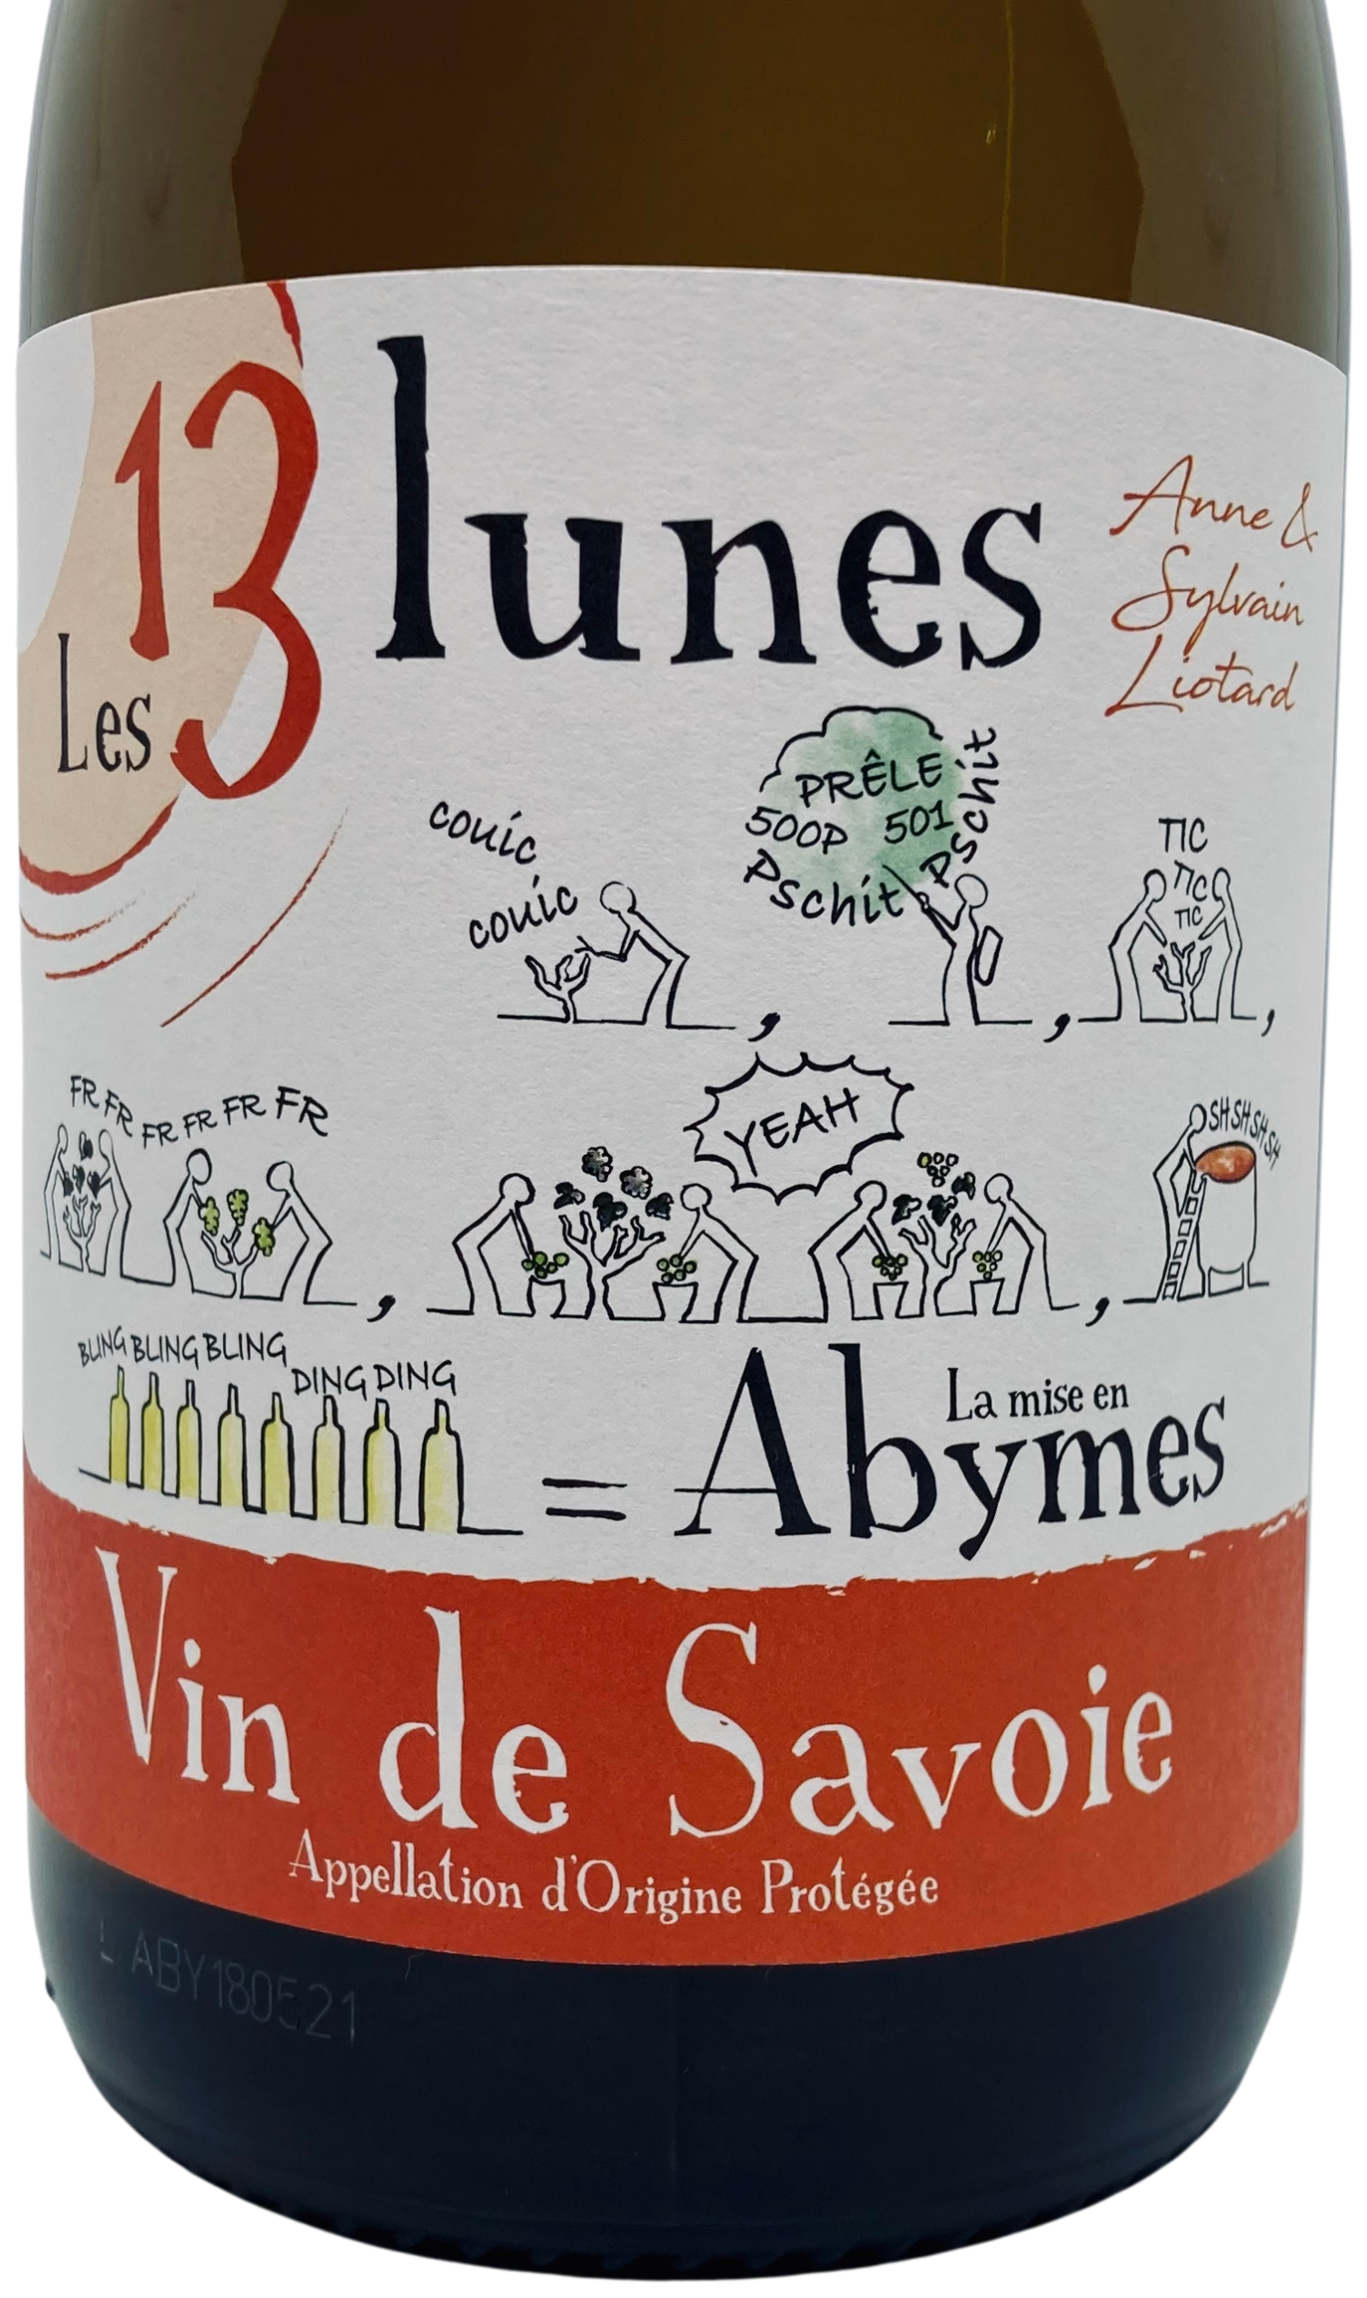 La mise en Abymes Vin de Savoie blanc